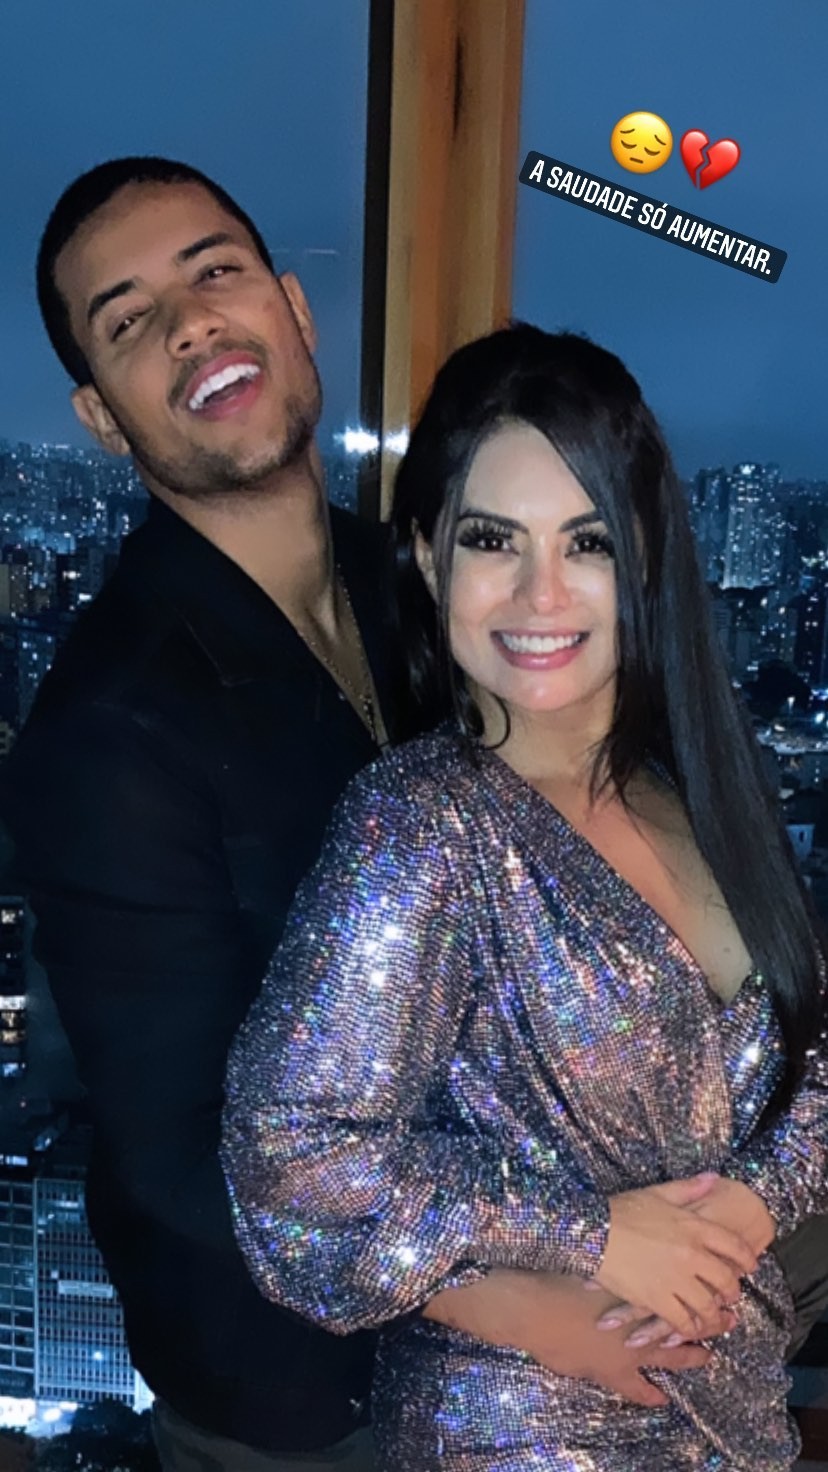 Clevinho Santos, marido de Paulinha Abelha, desabafa sobre saudade em foto com a cantora (Foto: Reprodução/Instagram)